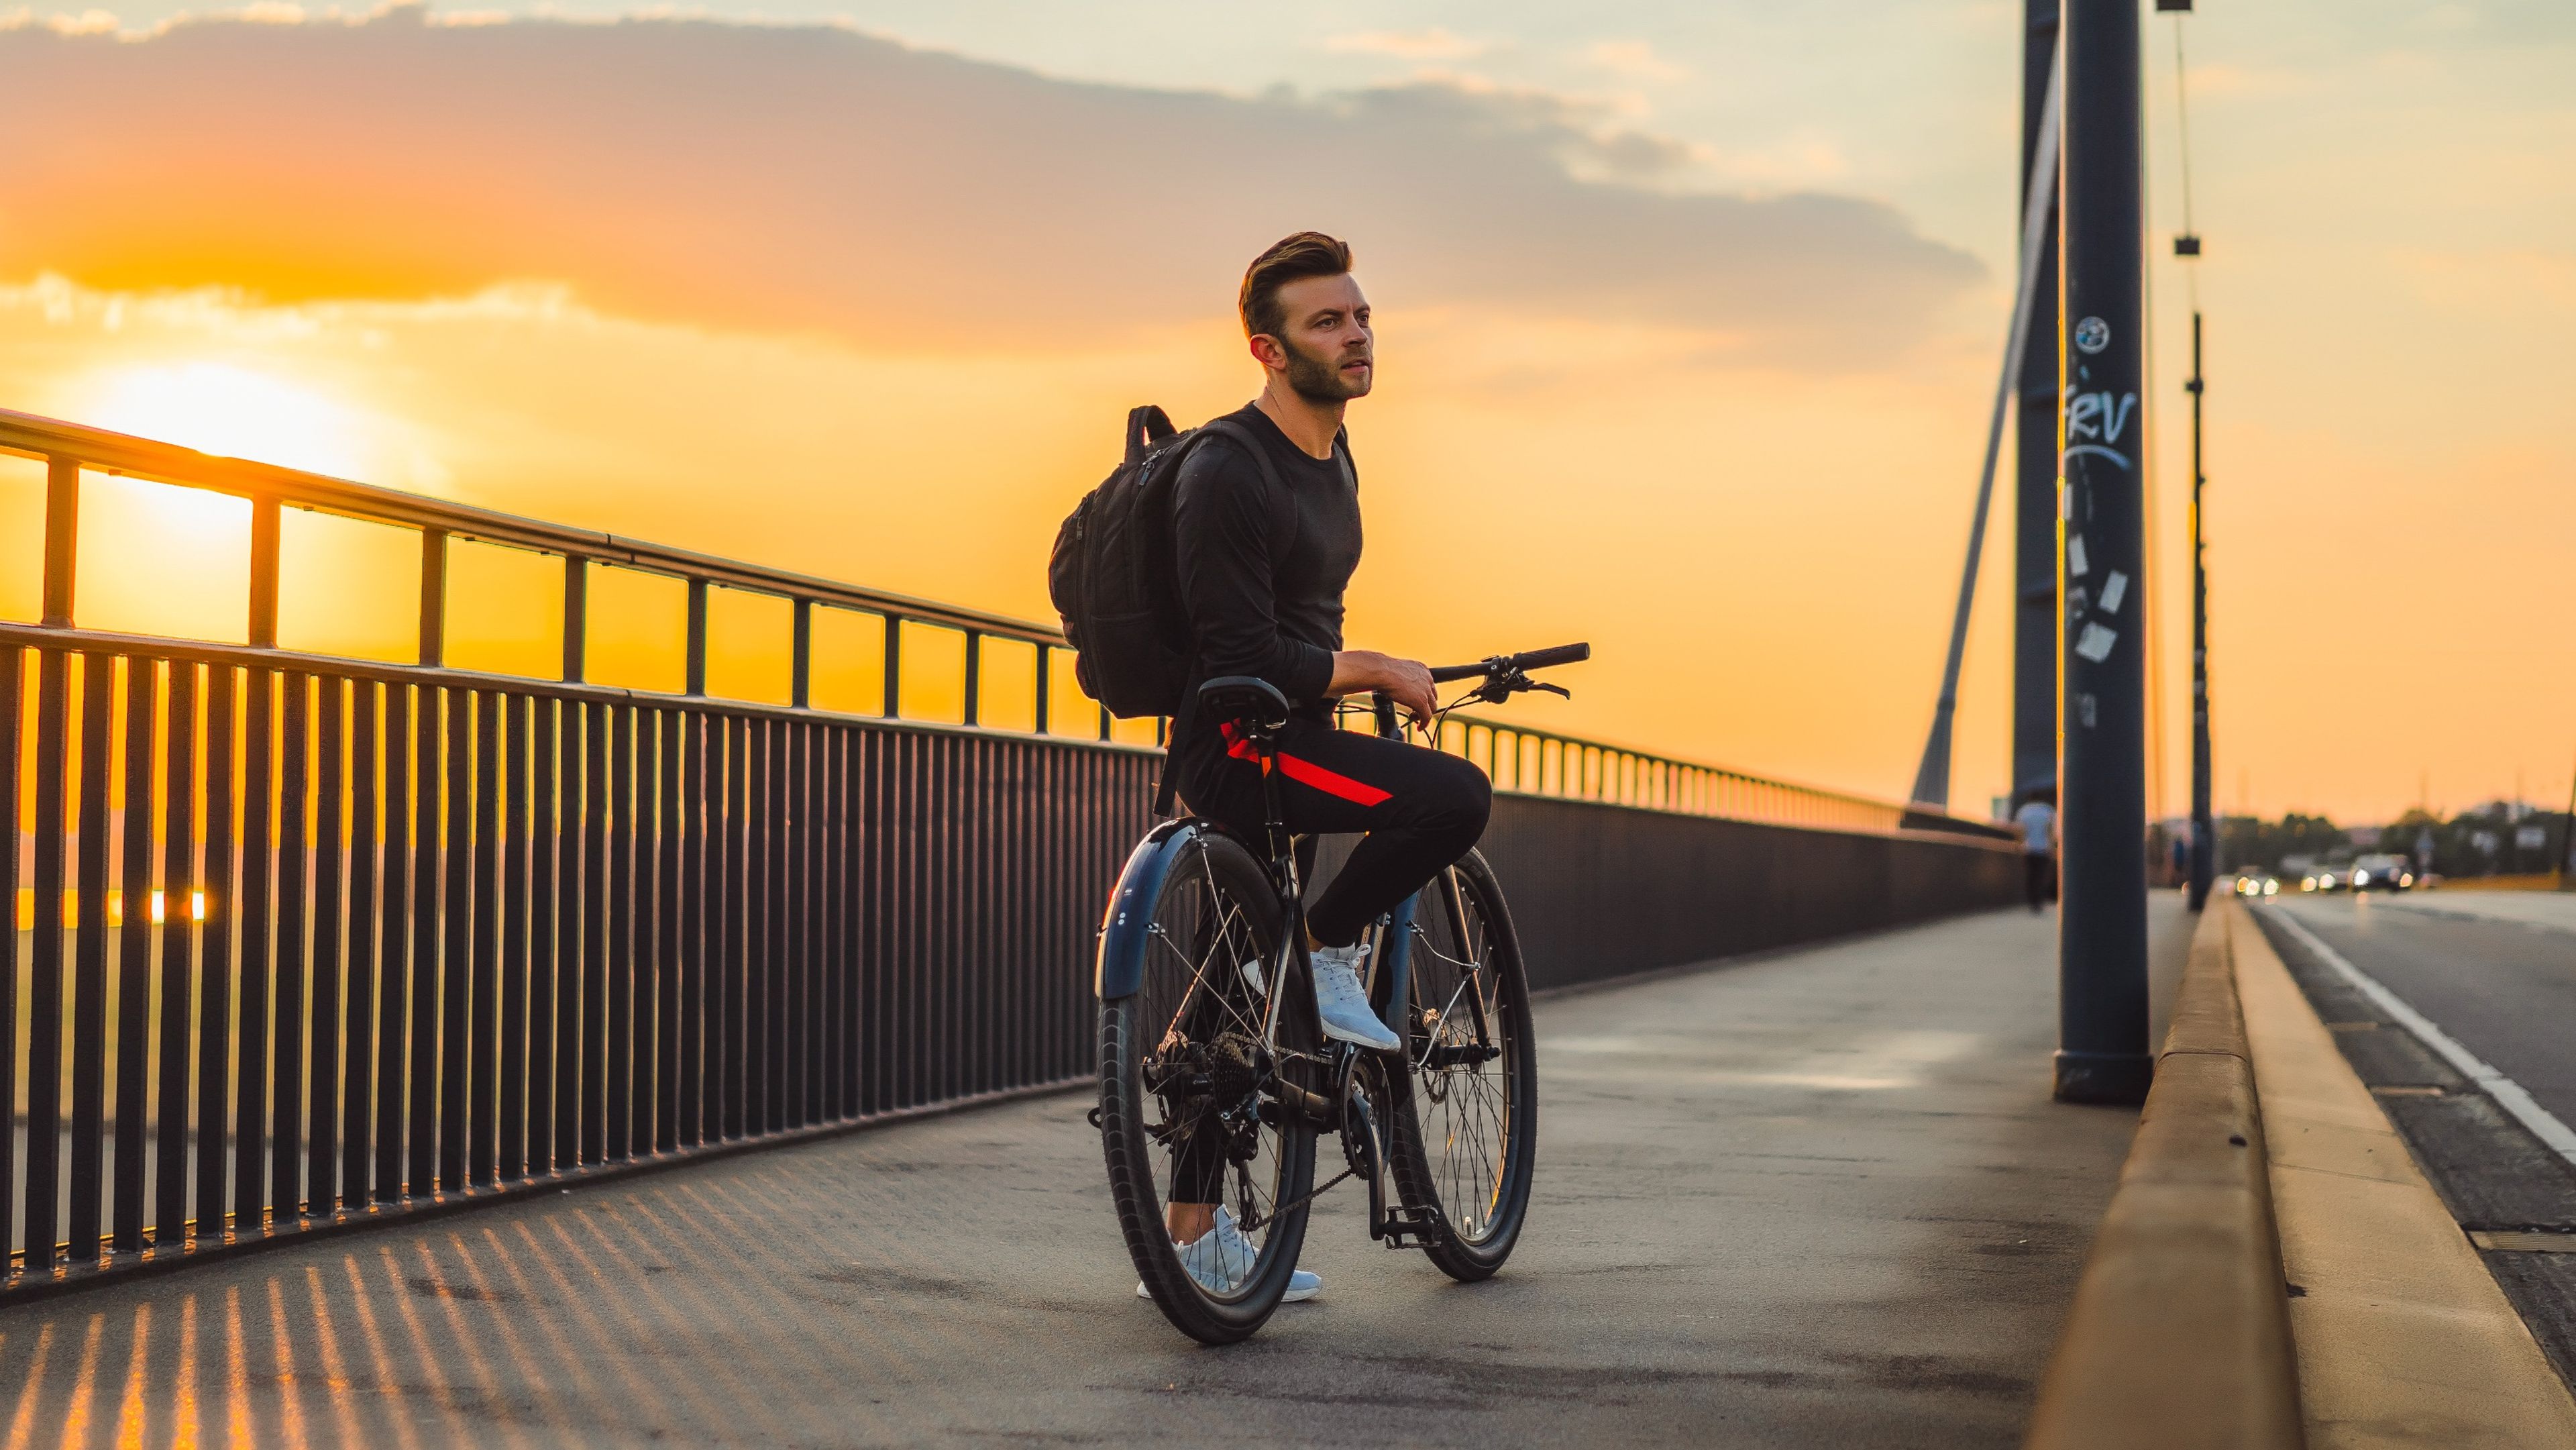 Hombre montando en una bicicleta en un puente